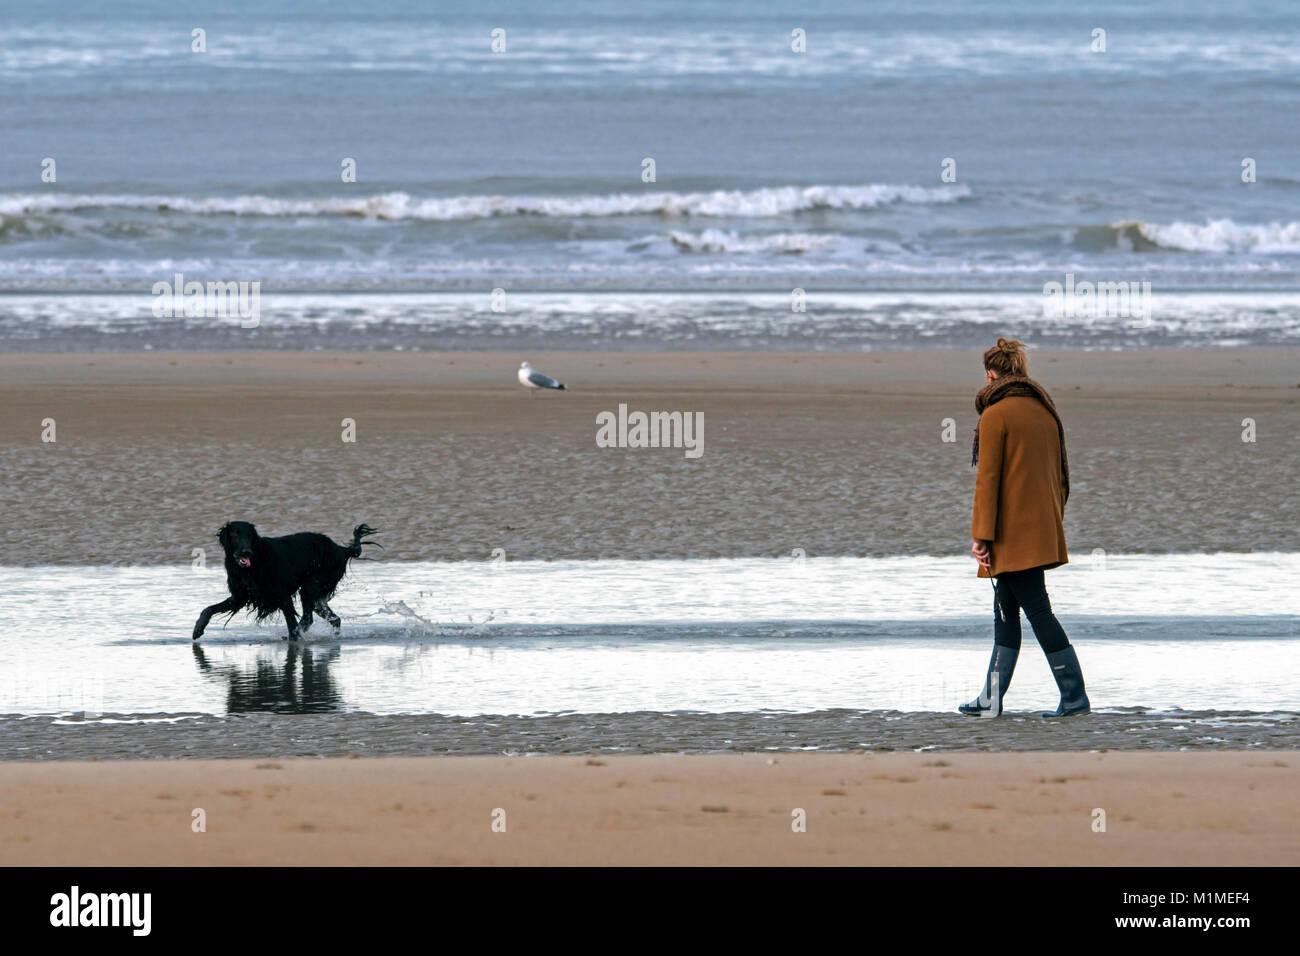 Einsame Frau Wandern auf einsamen Sandstrand mit verspielten schwarzen Hund läuft durch das Wasser entlang der Nordseeküste im Winter Stockfoto